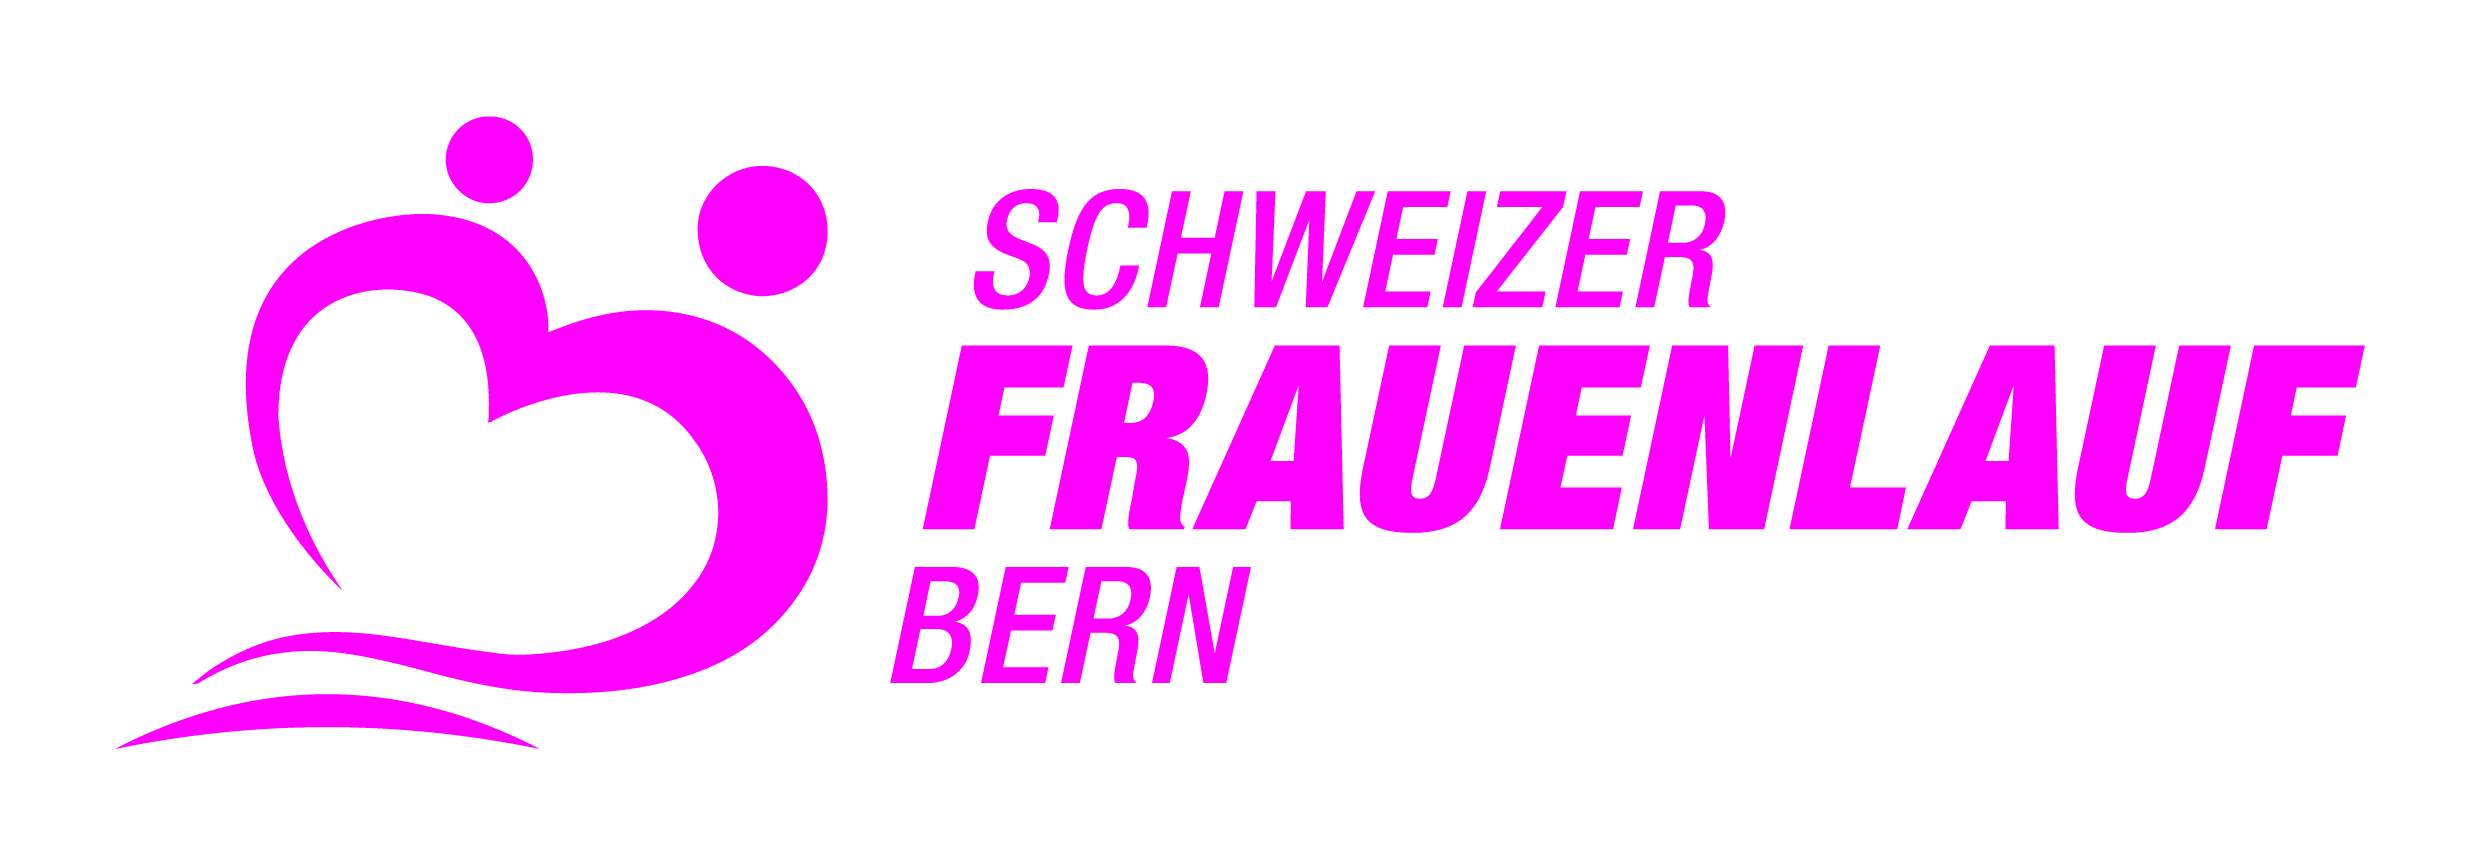 36. Schweizer Frauenlauf Bern